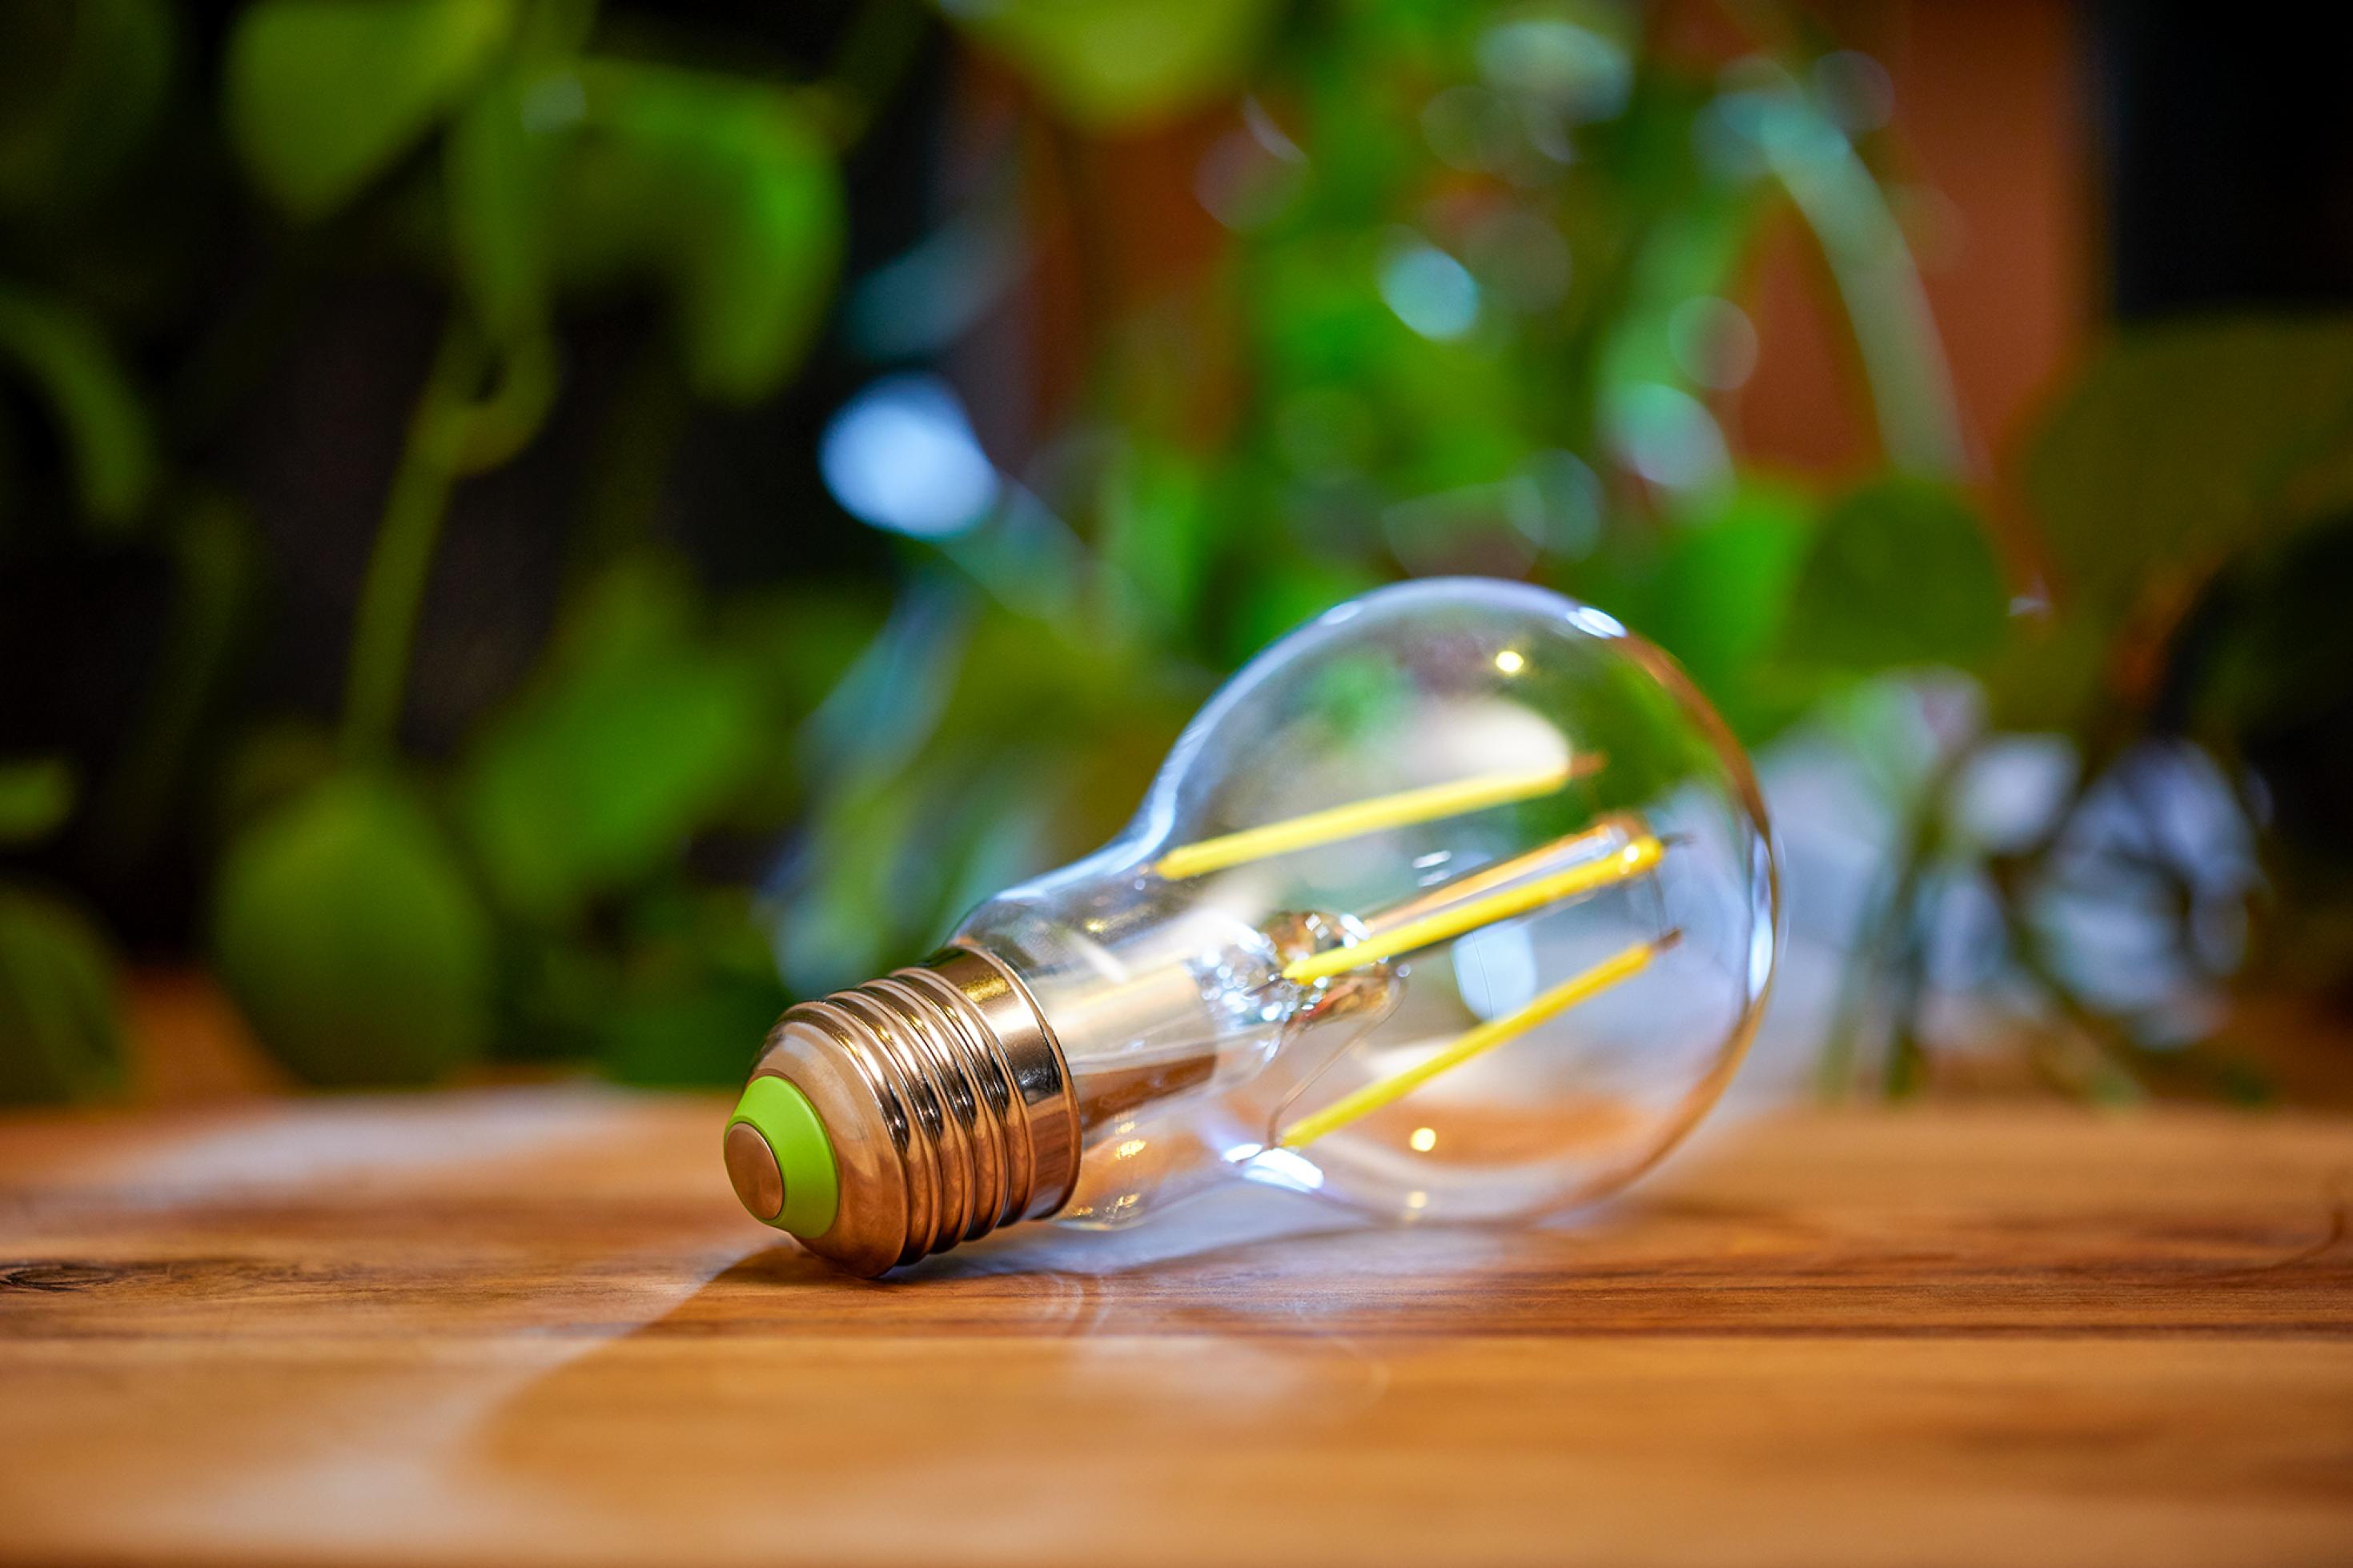 LED-Lampe in Nahaufnahme, die auf einem Holztisch liegt, im Hintergrund Grünpflanzen